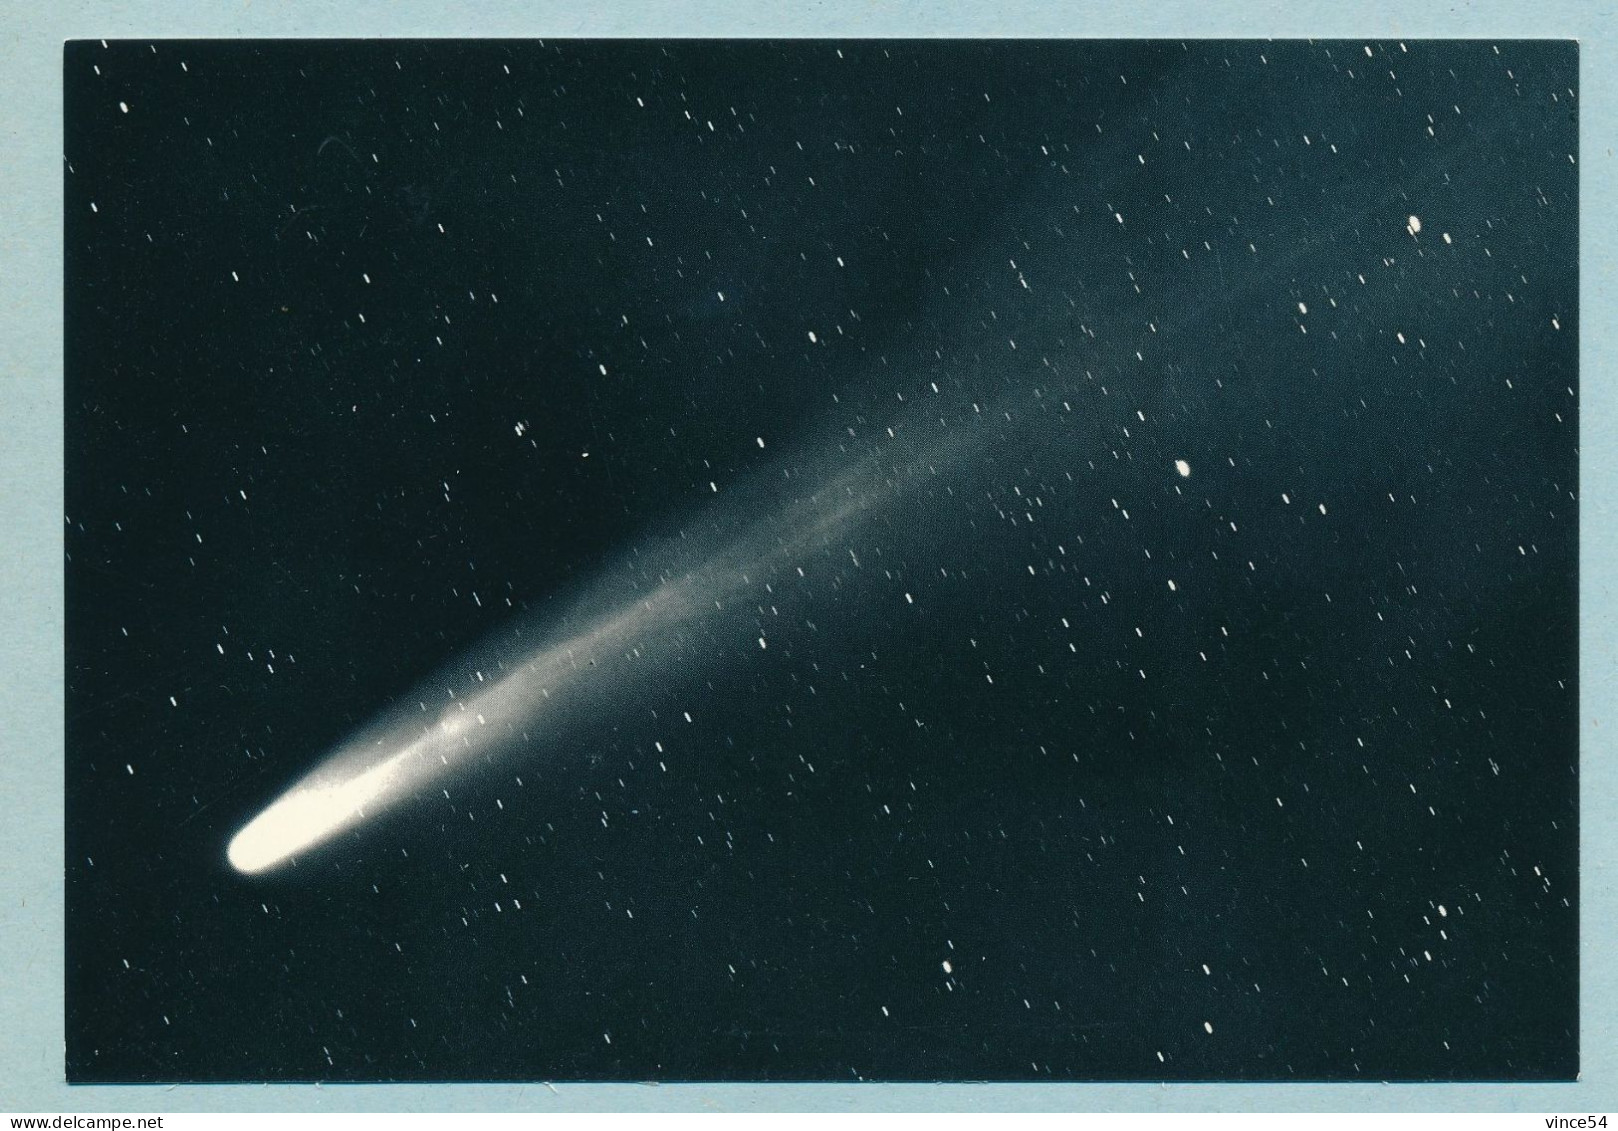 OBSERVATOIRE DE NICE - Comète BENNETT (1969 I) - Cliché Du 2 Avril 1970 B. Milet - Astronomie